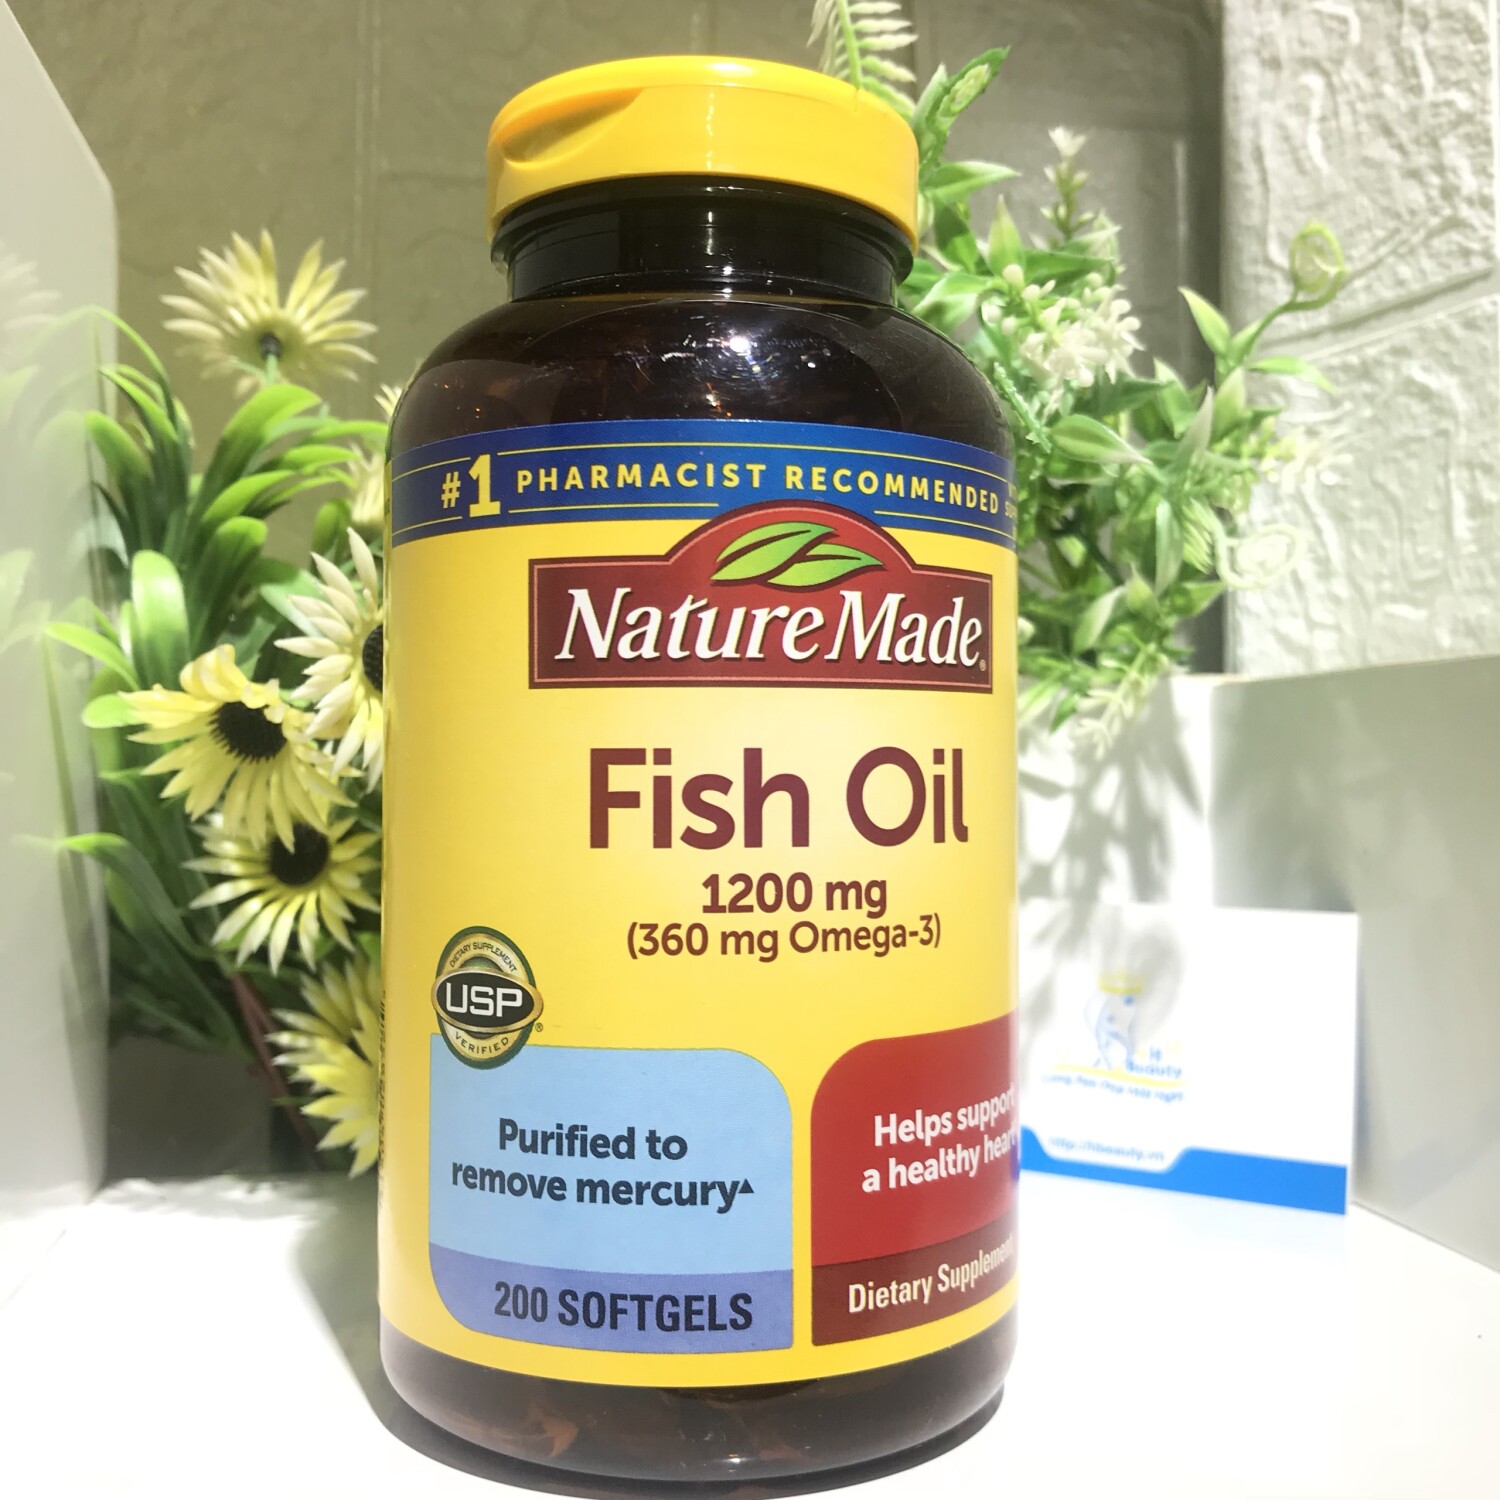 Dầu Cá Nature Made Fish Oil Omega 3 1200mg Hộp 200 Viên